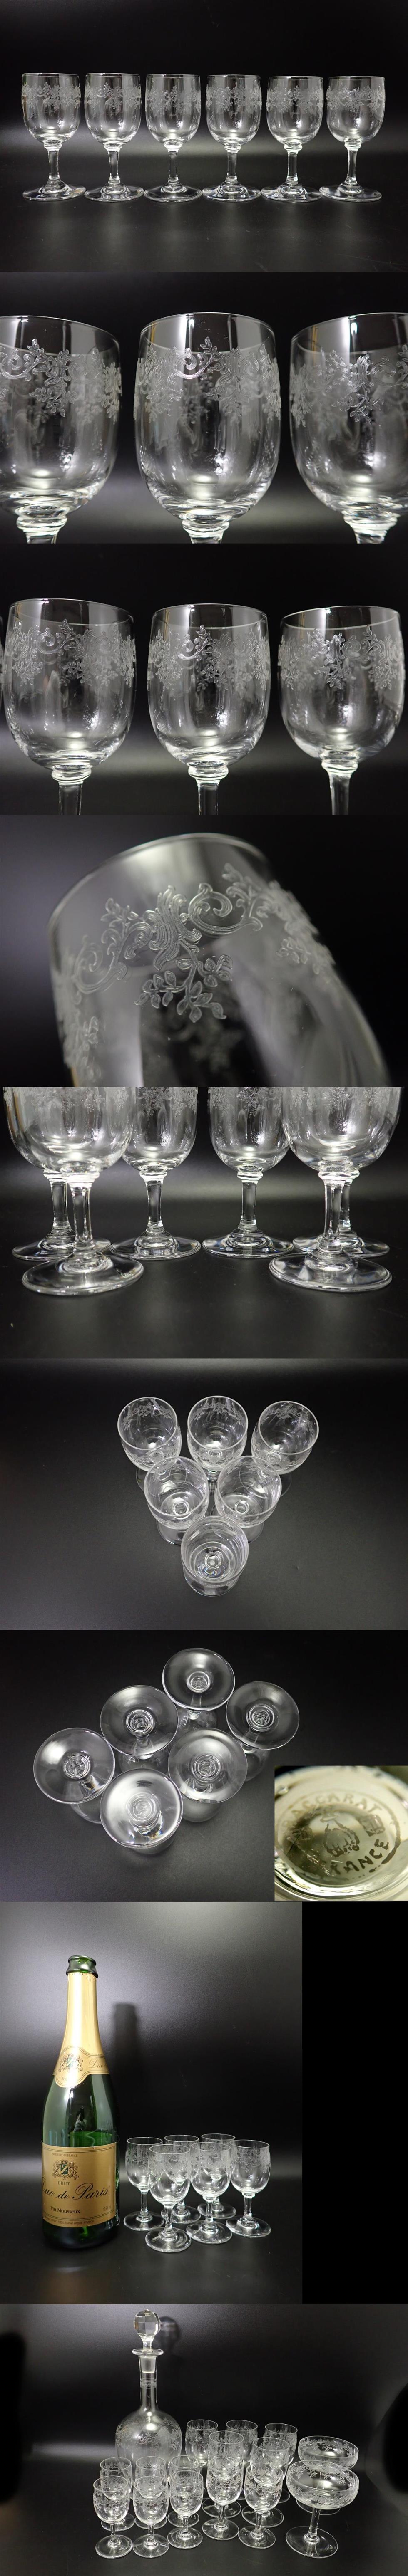 好評得価オールド バカラ セビーノ 日本酒 グラス 6個 リキュール Sevigne セヴィーヌ セヴィニエ アンティーク フランス ヴィンテージ f345 クリスタルガラス